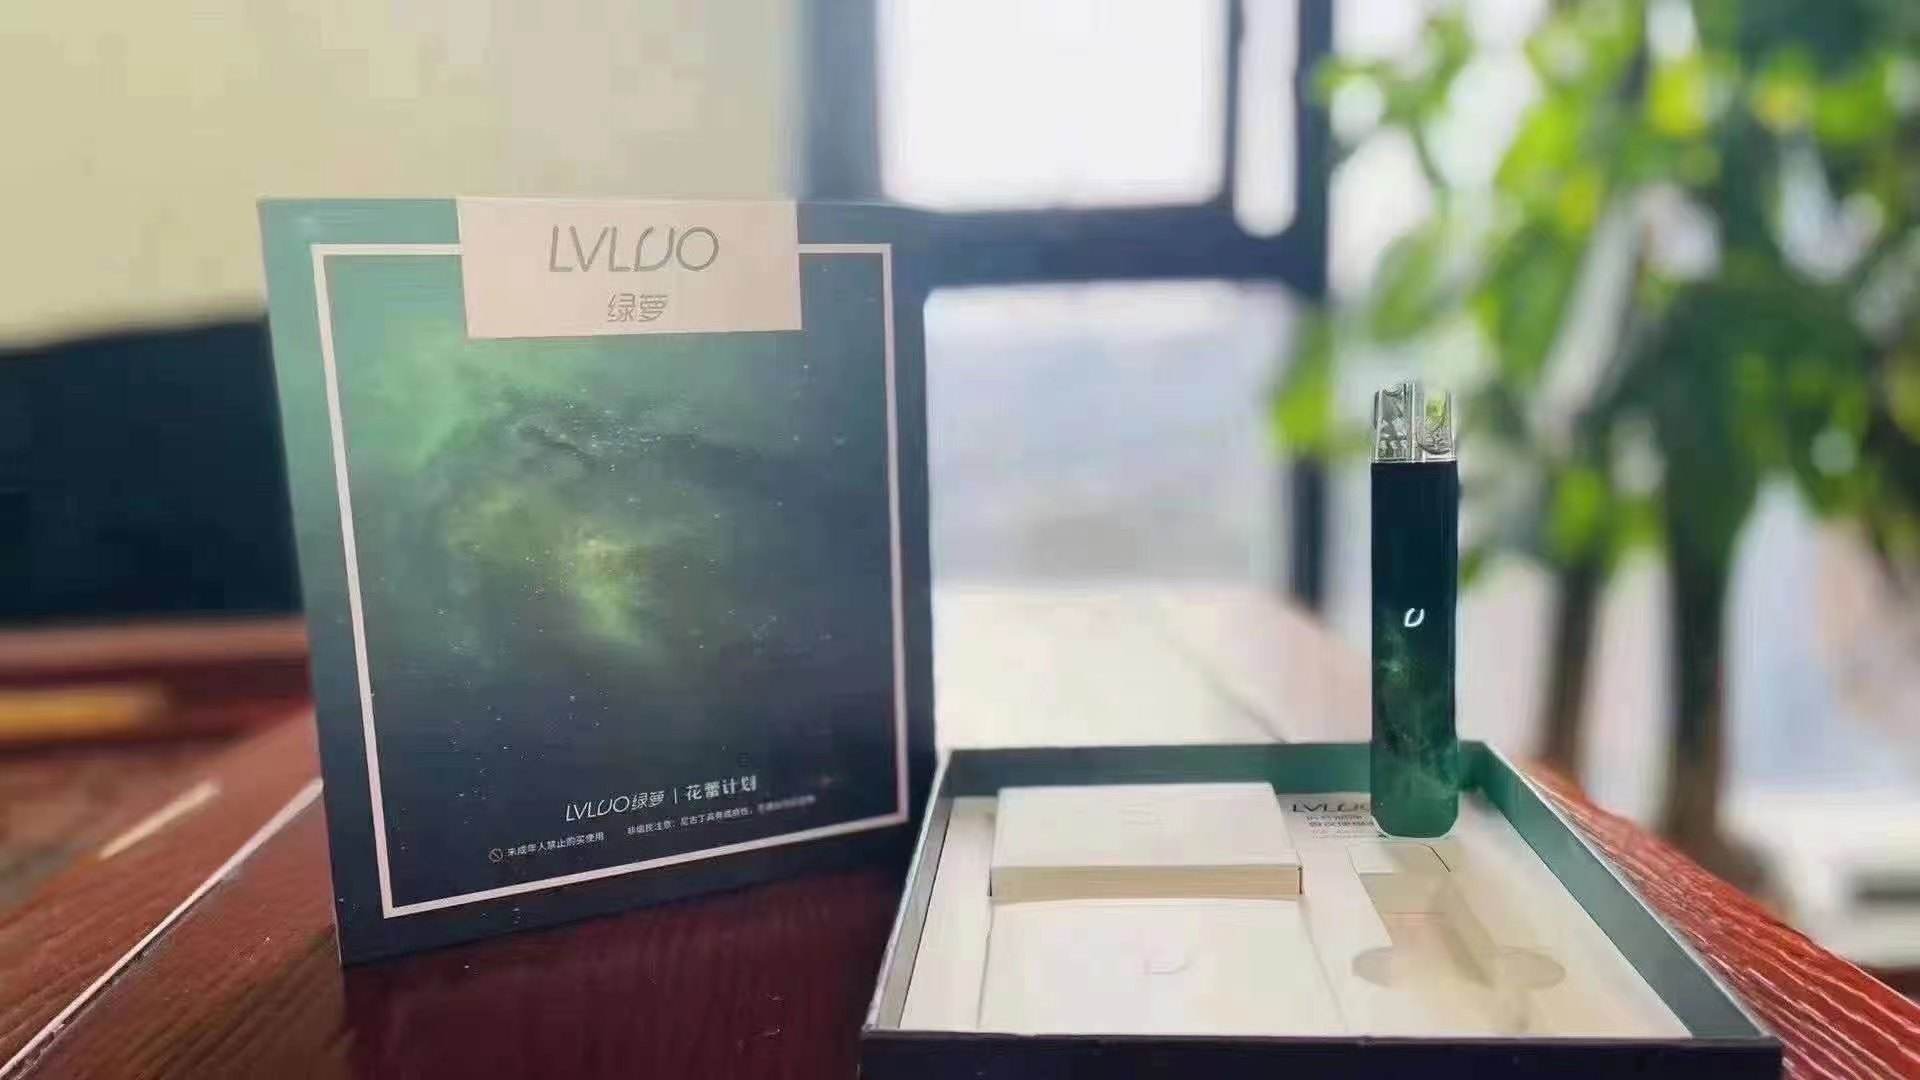 绿萝电子烟LVLUO价格表的简单介绍